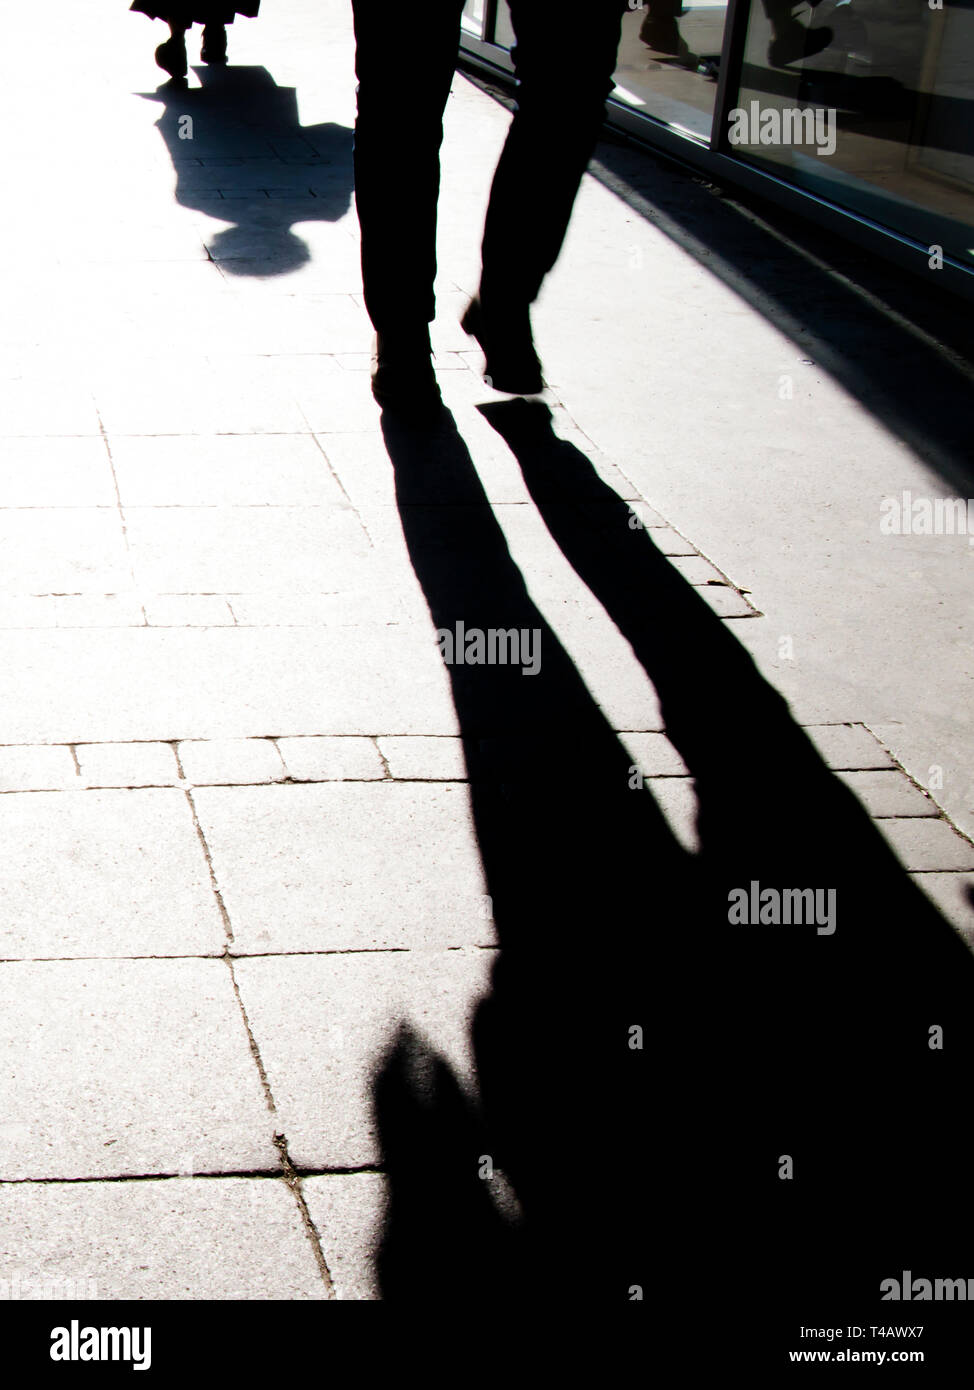 Sombra borrosa silueta de gente caminando en blanco y negro de alto contraste Foto de stock